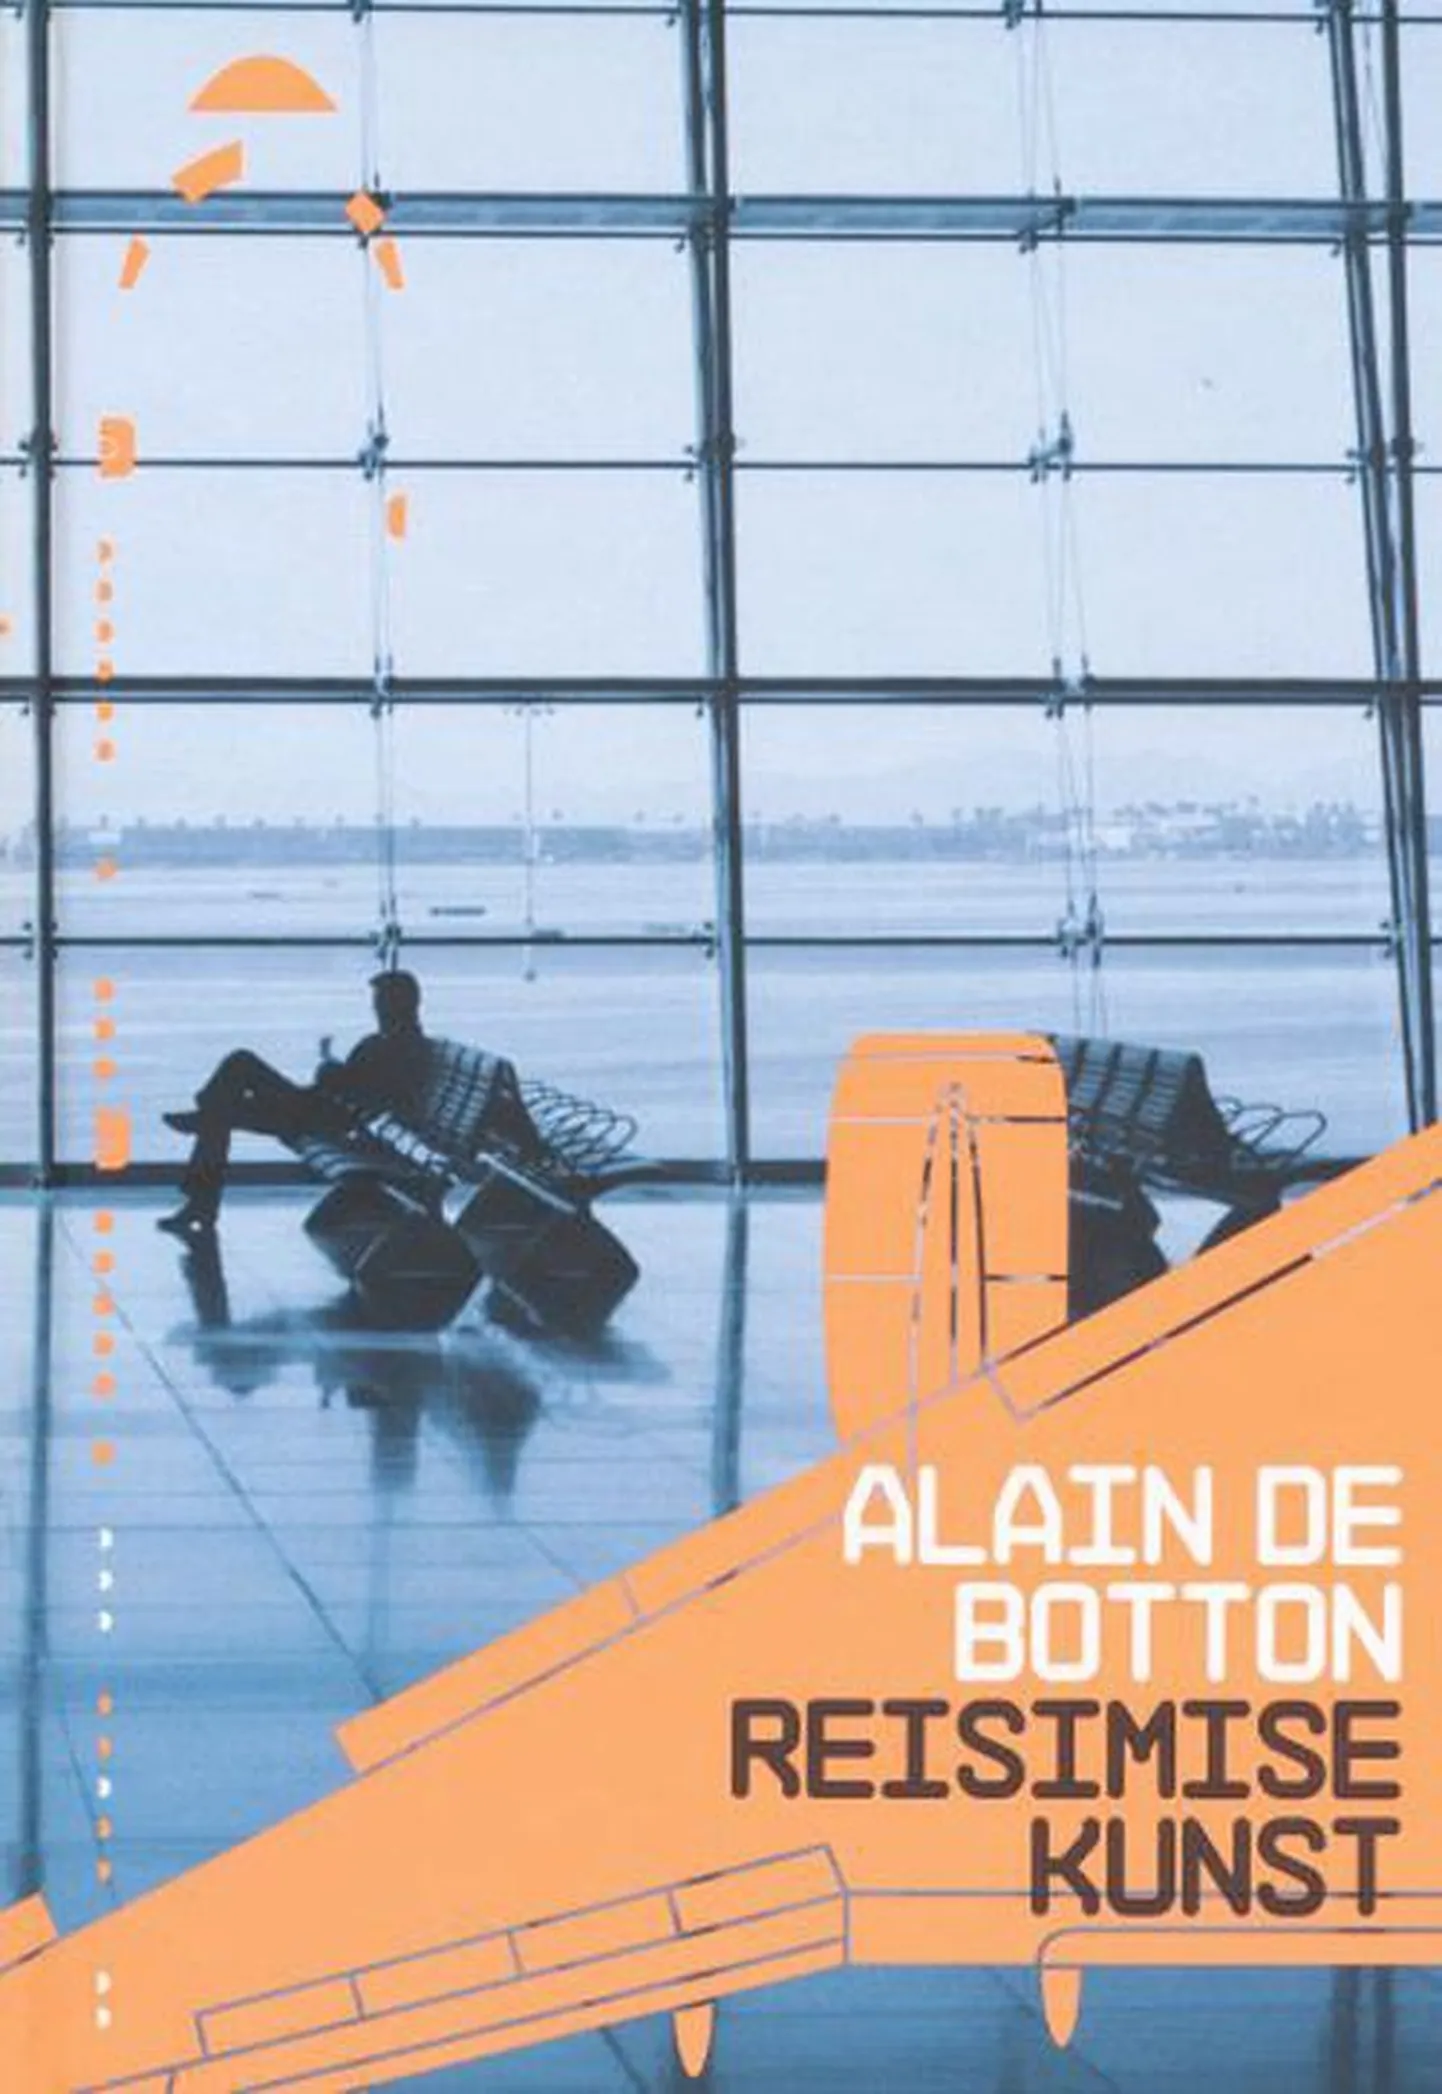 Raamat
Alain de Botton
«Reisimise kunst»
Tõlkija Kristjan Jaak Kangur
Varrak, 2010, 215 lk